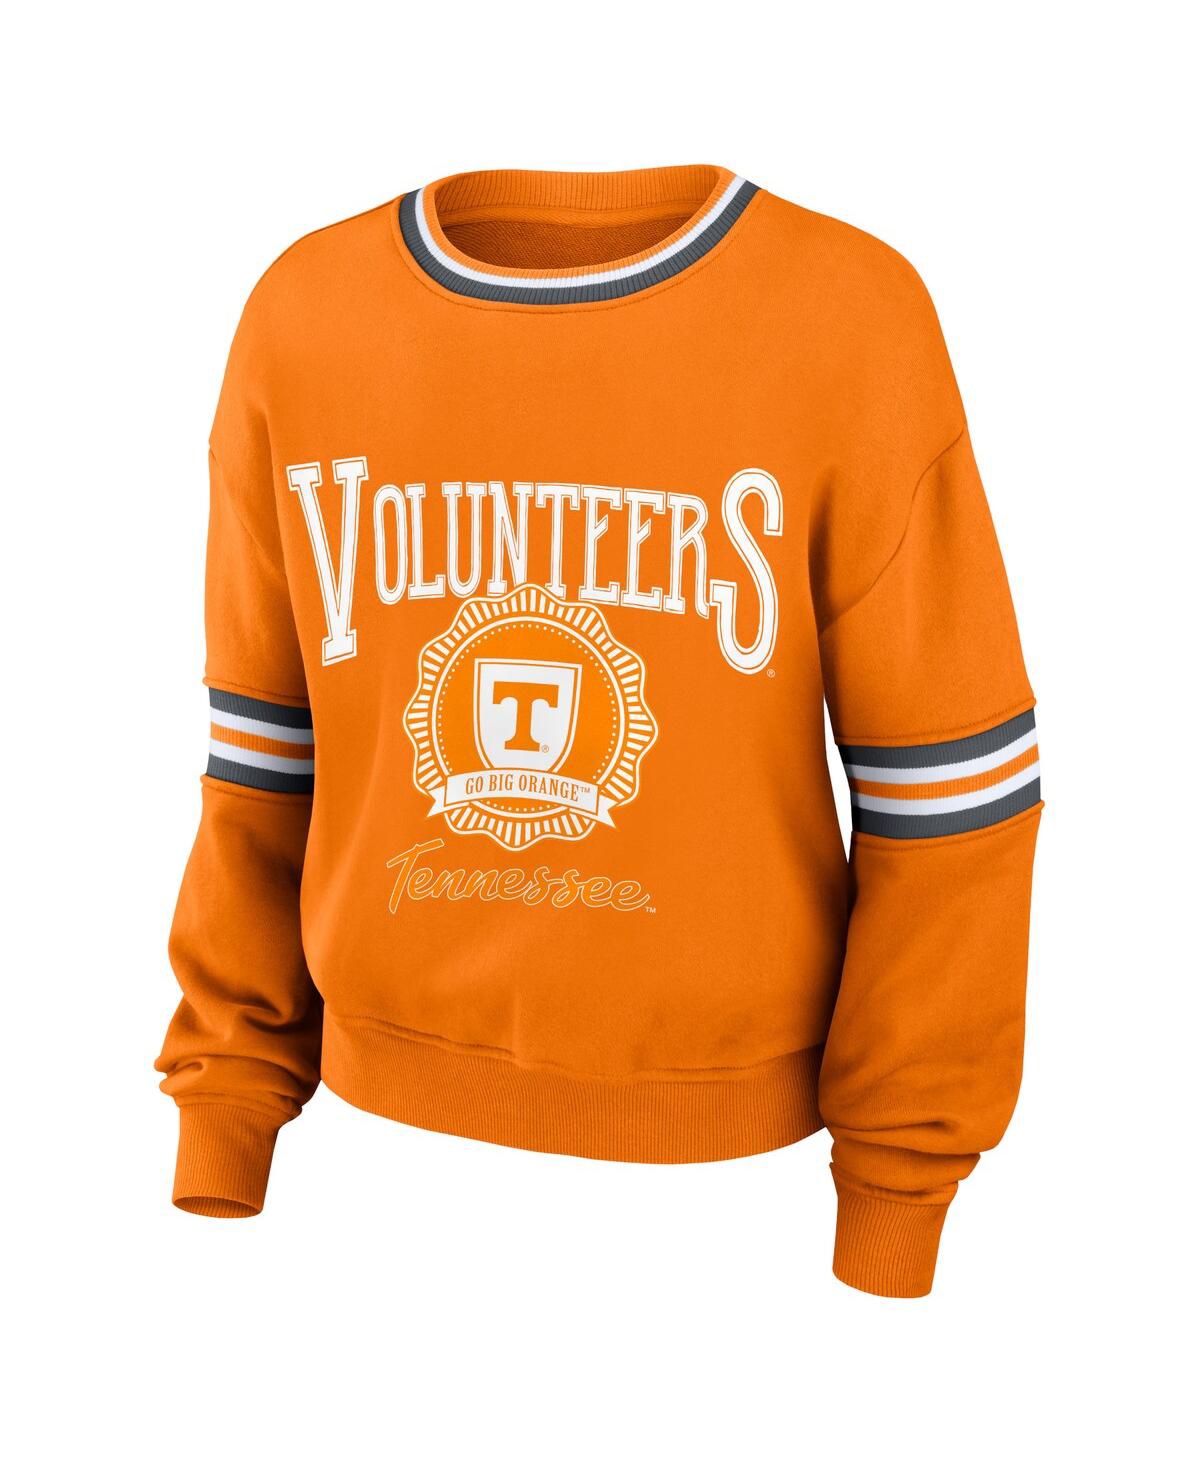 Shop Wear By Erin Andrews Women's  Orange Distressed Tennessee Volunteers Vintage-like Pullover Sweatshirt